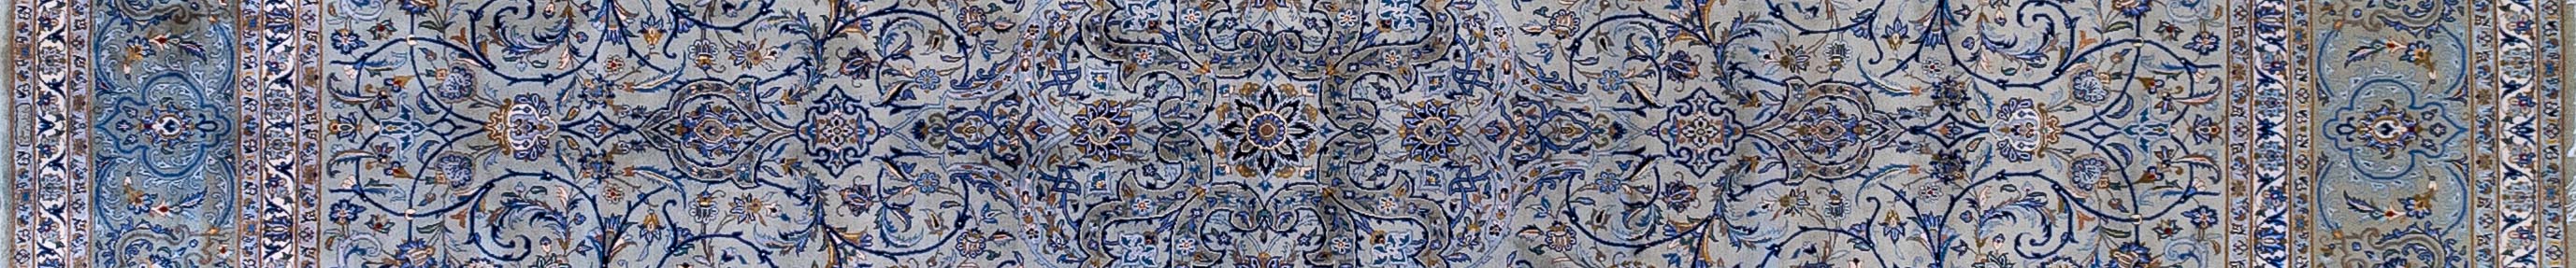 Kashan Persian Carpet Rug N1Carpet Canada Montreal Tapis Persan 11900